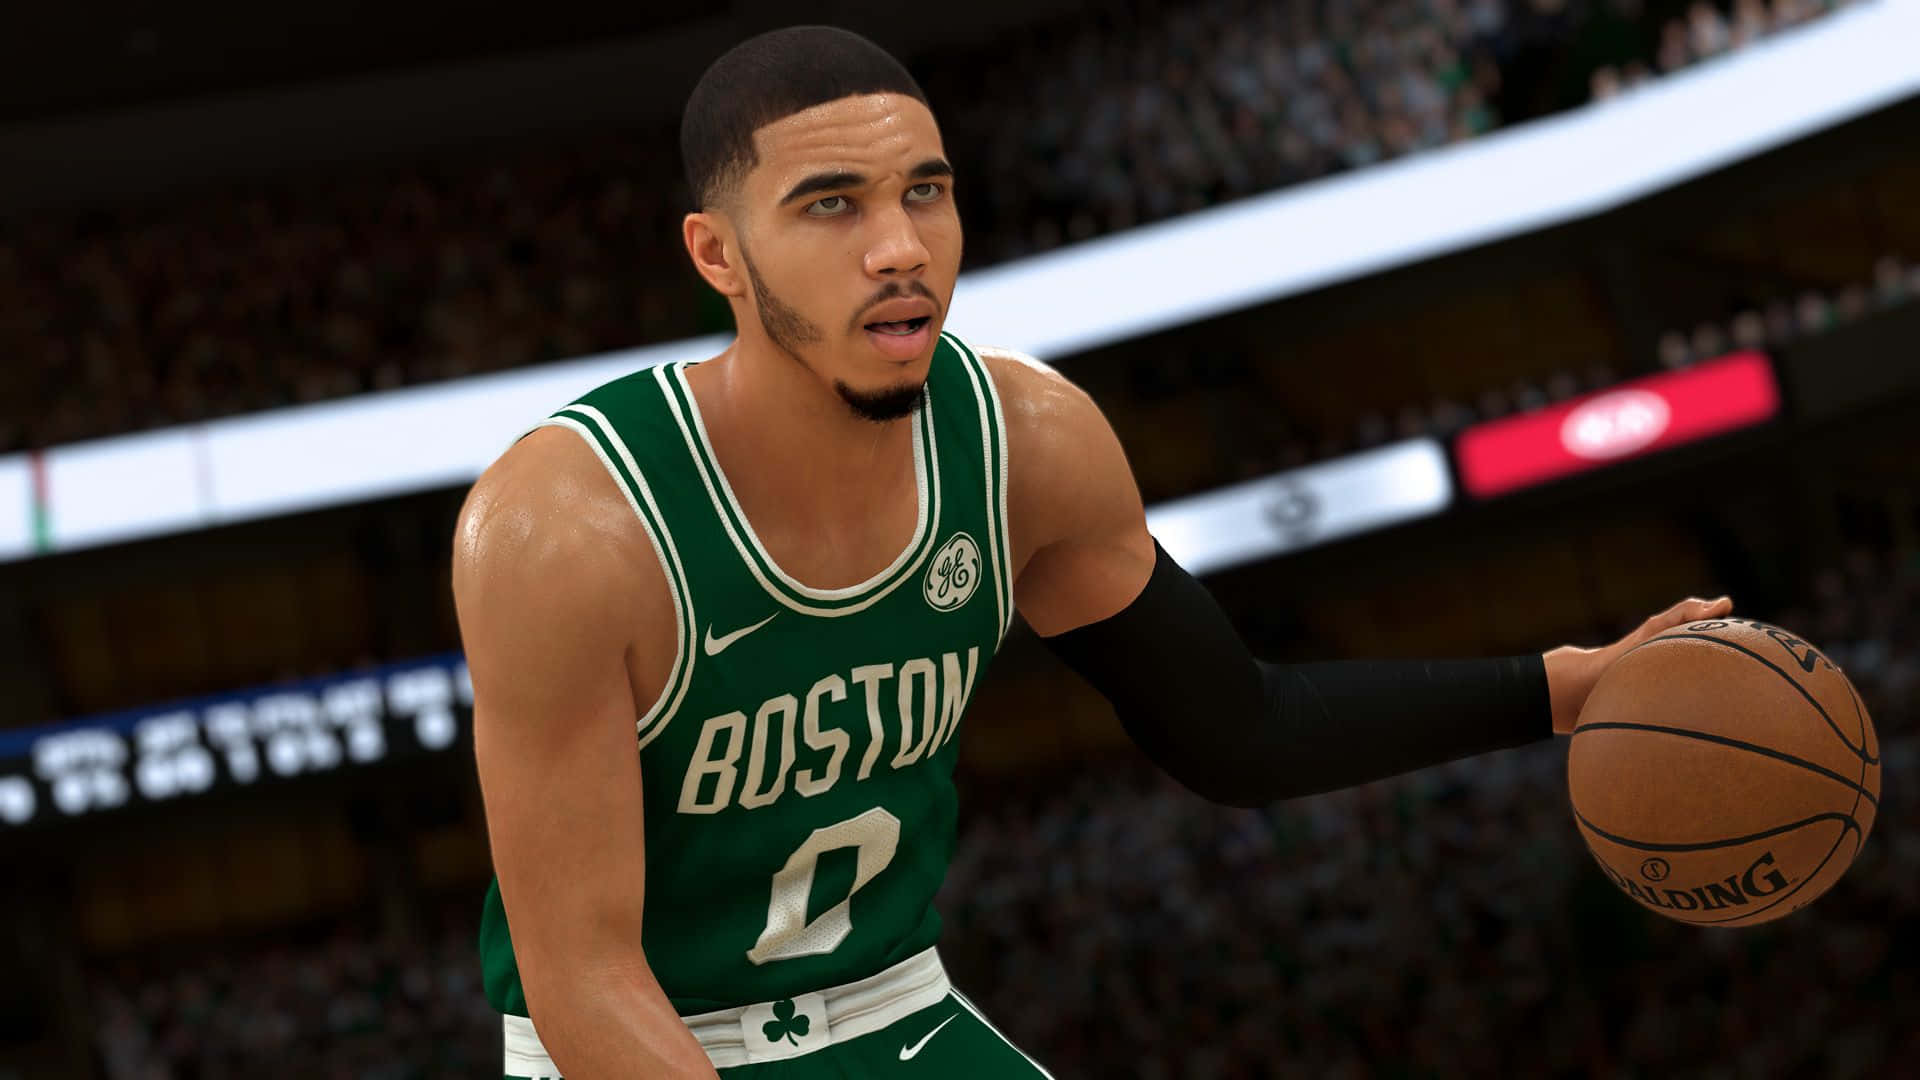 Capturasde Tela Do Nba 2k18 - Boston Celtics. Papel de Parede